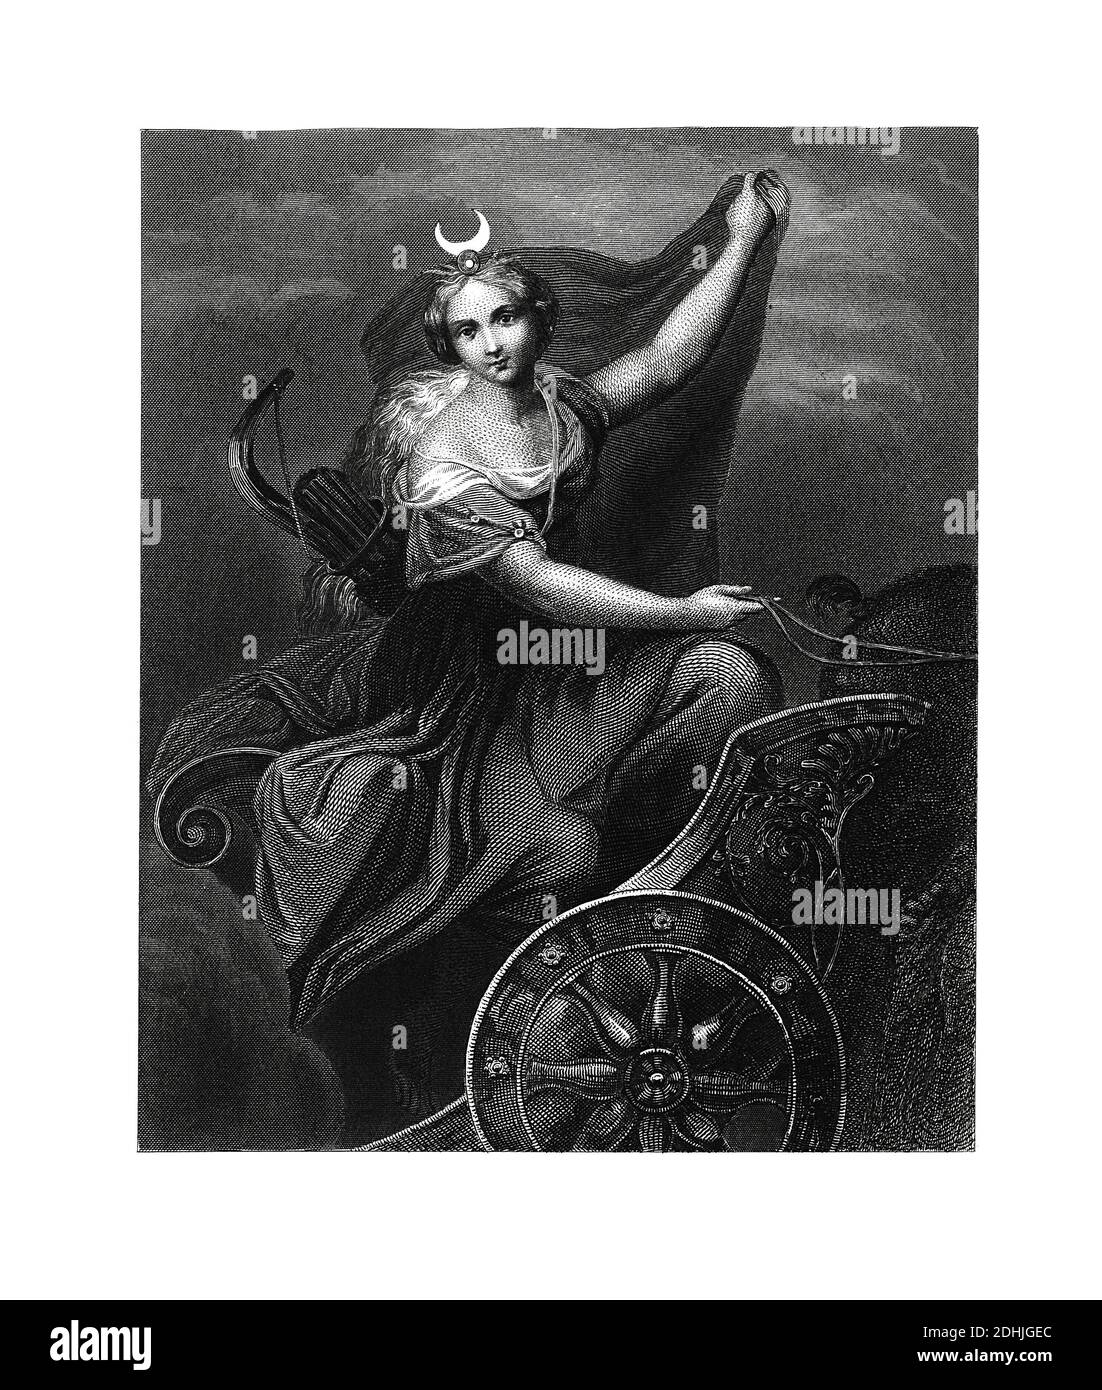 Illustrazione originale di Diana, dea della caccia, la luna e parto. Pubblicato in una storia pittorica del mondo grandi nazioni: dall'orecchio Foto Stock